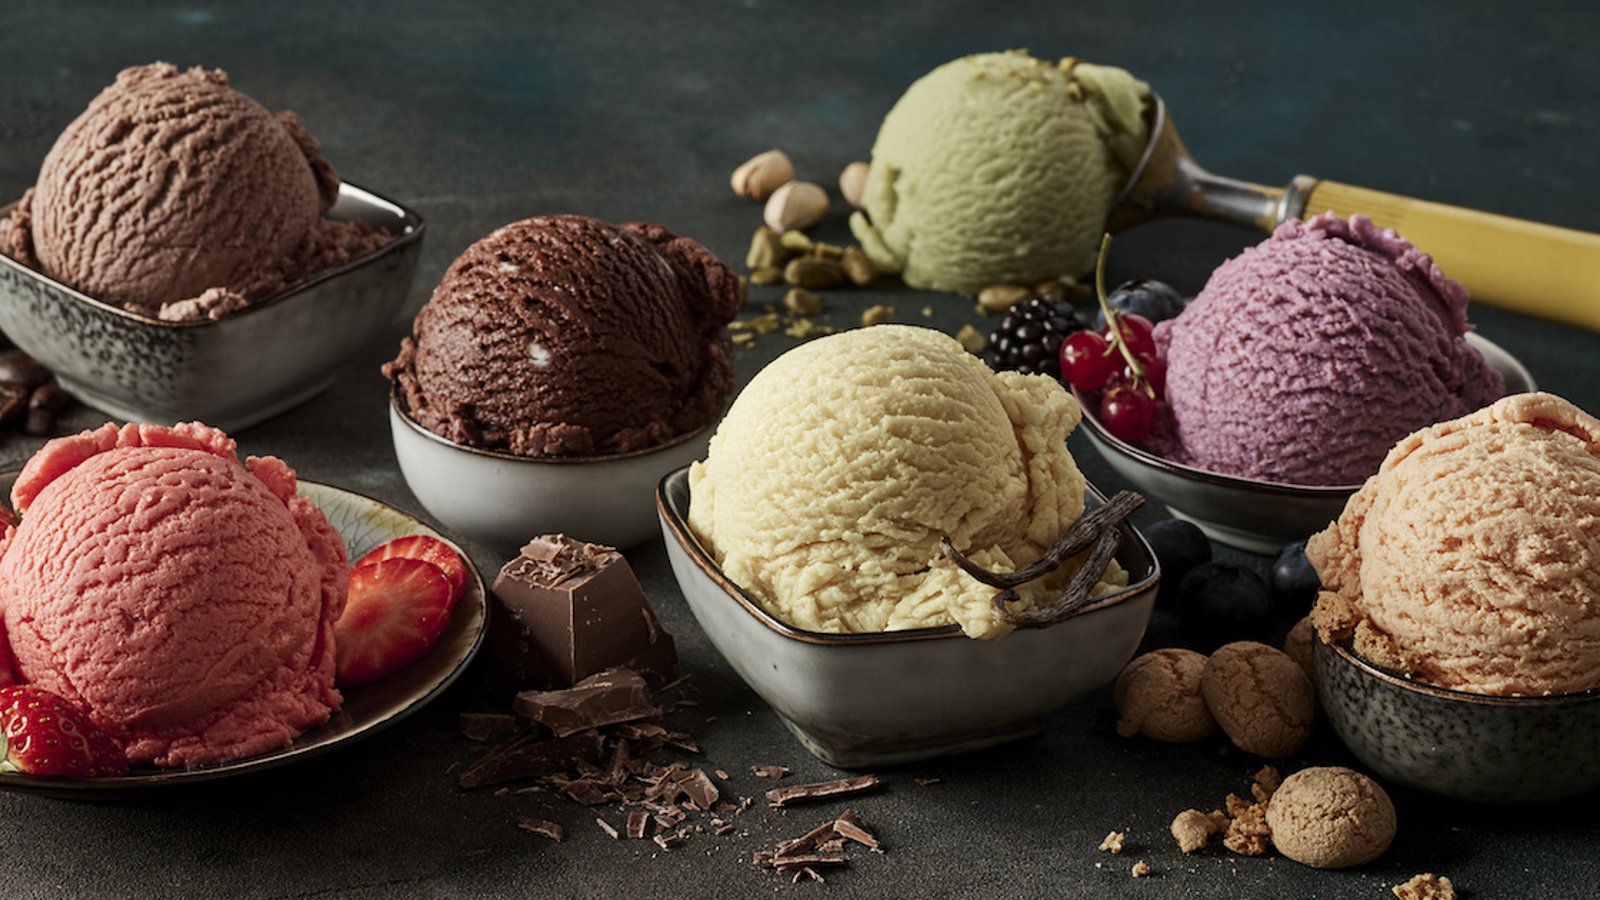 Votre préférence en matière de crème glacée peut nous révéler votre personnalité